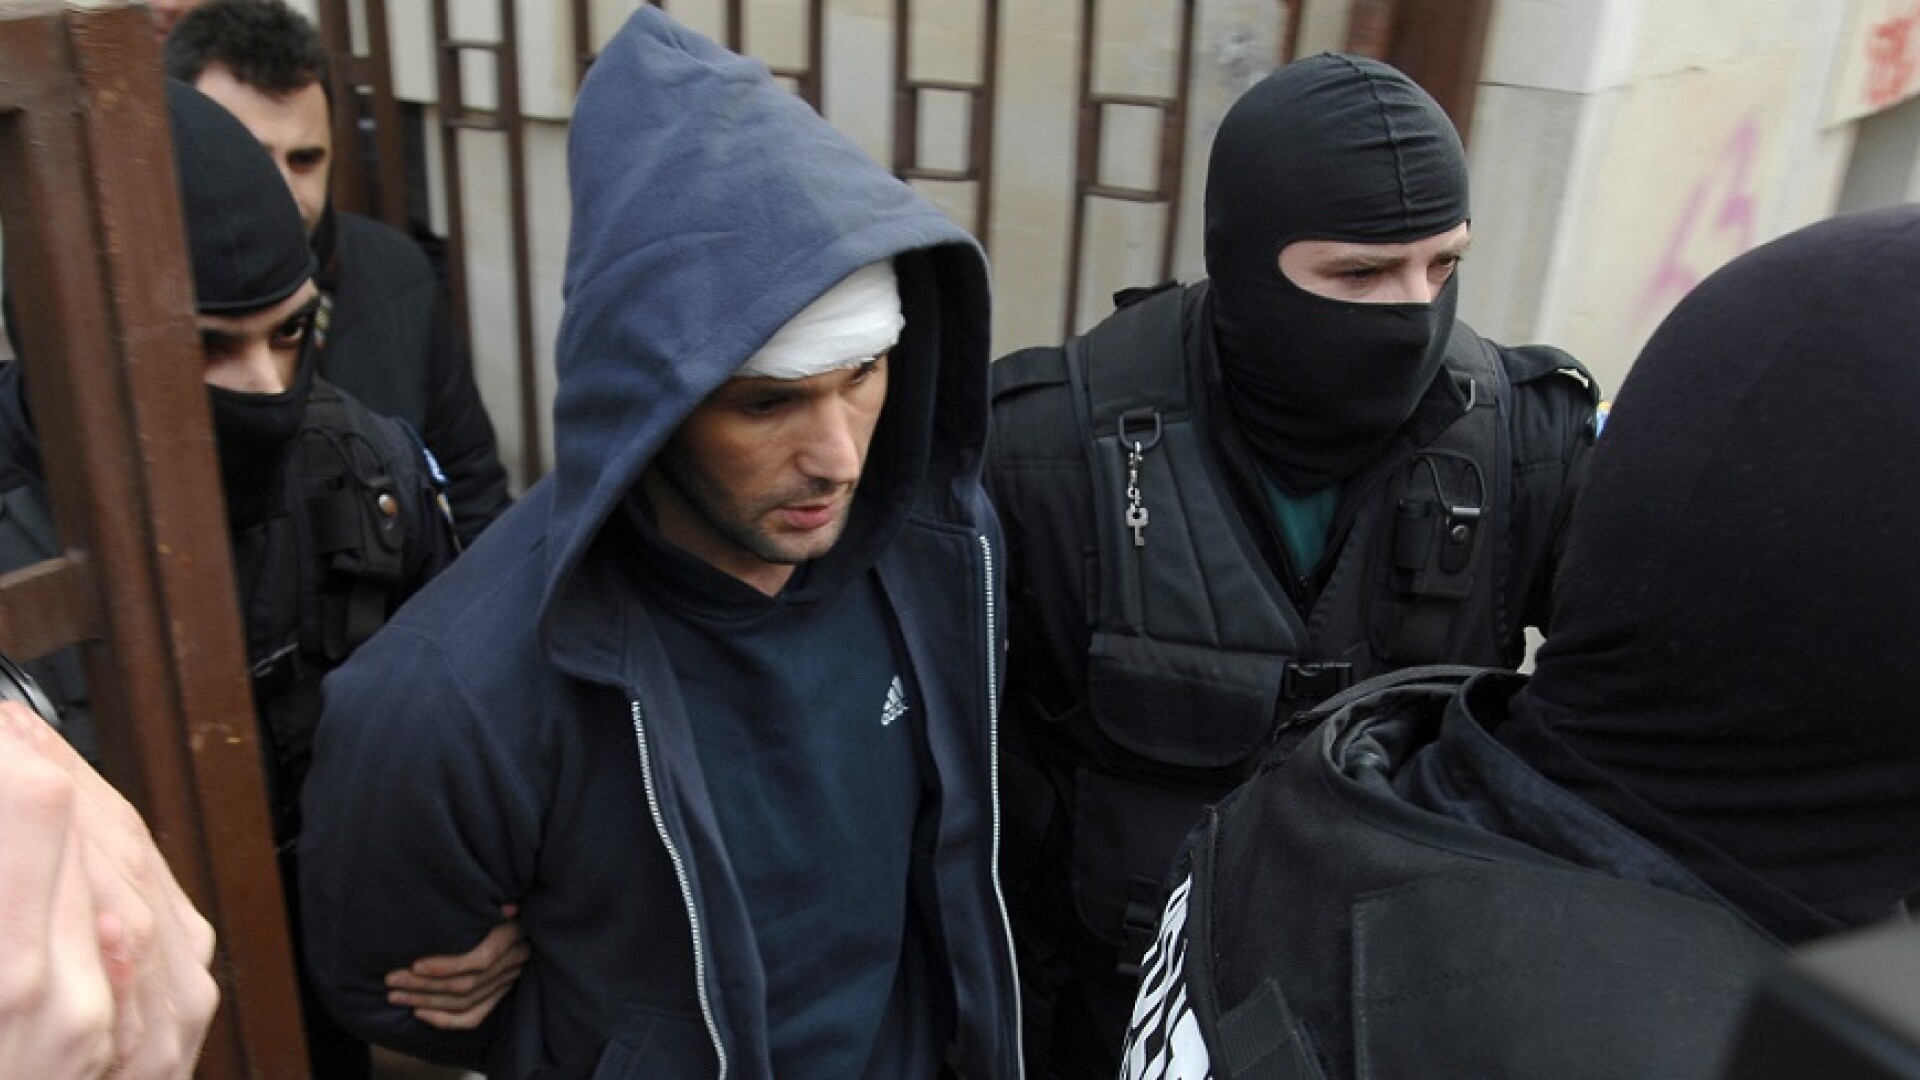 Interlopii Petre Geamănu şi Eugen Preda, arestaţi preventiv pentru camătă și șantaj